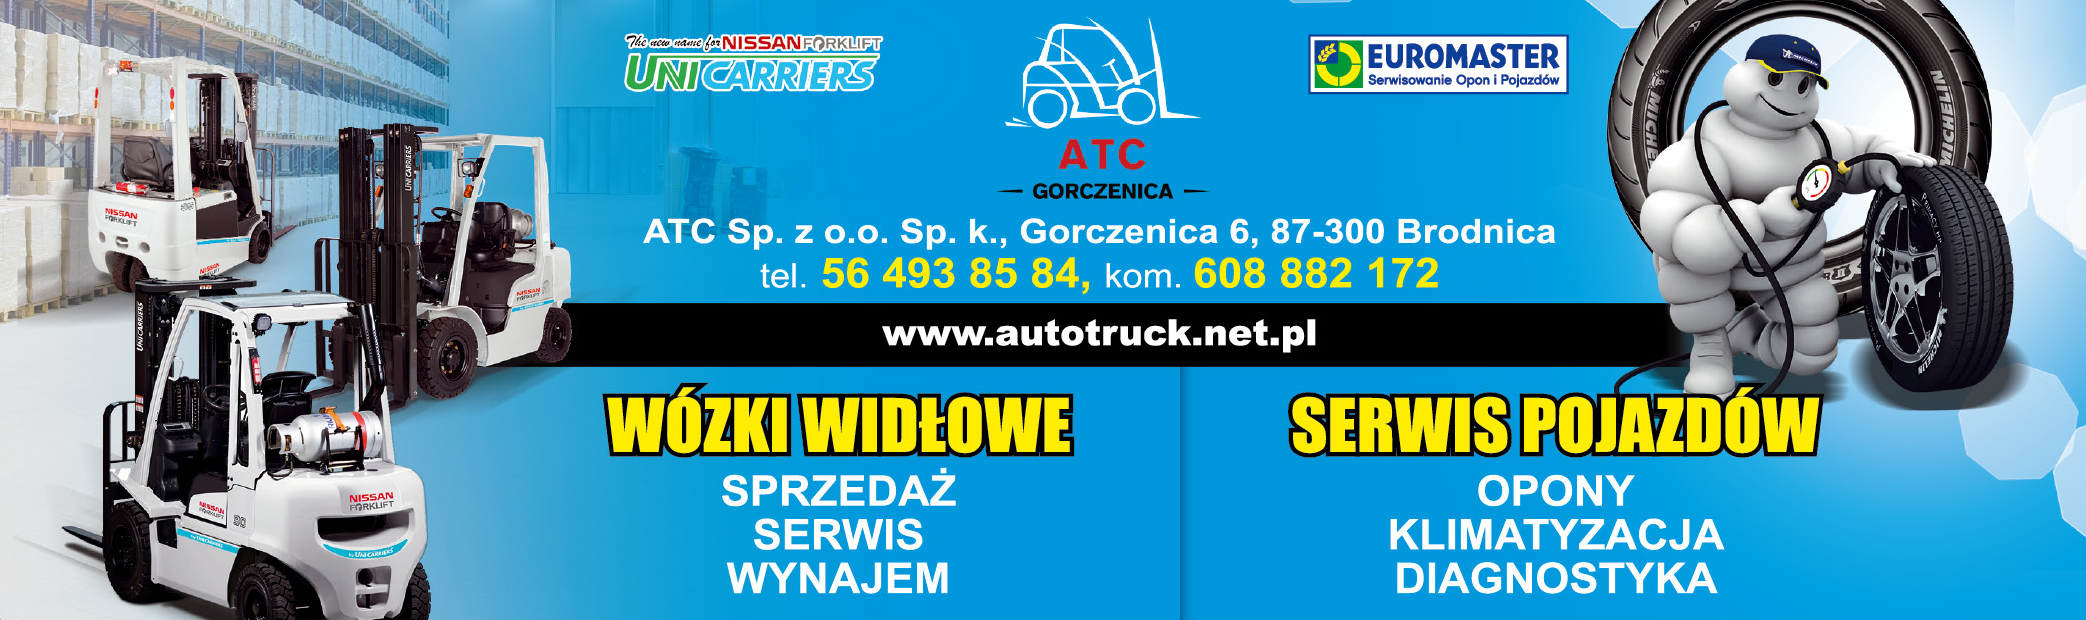 ATC Sp. z o.o. sp.k. Gorczenica Wózki Widłowe / Serwis Pojazdów